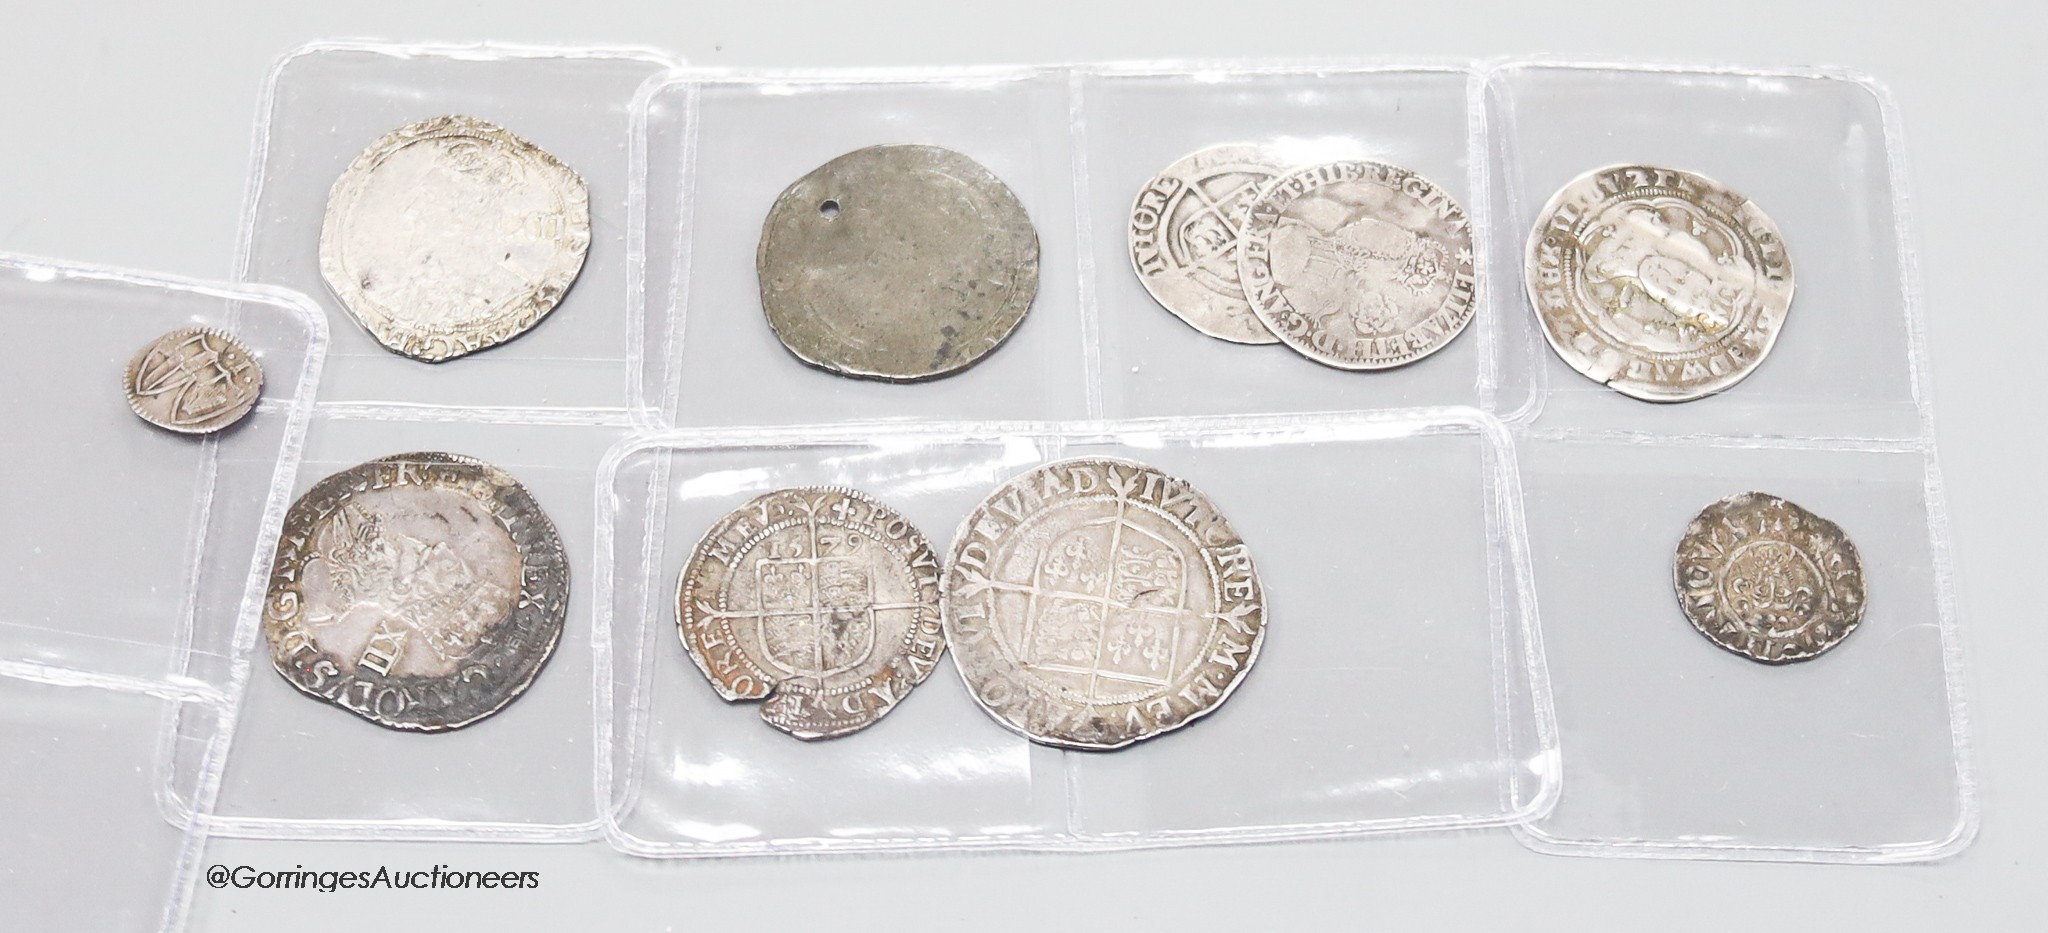 British hammered coinage